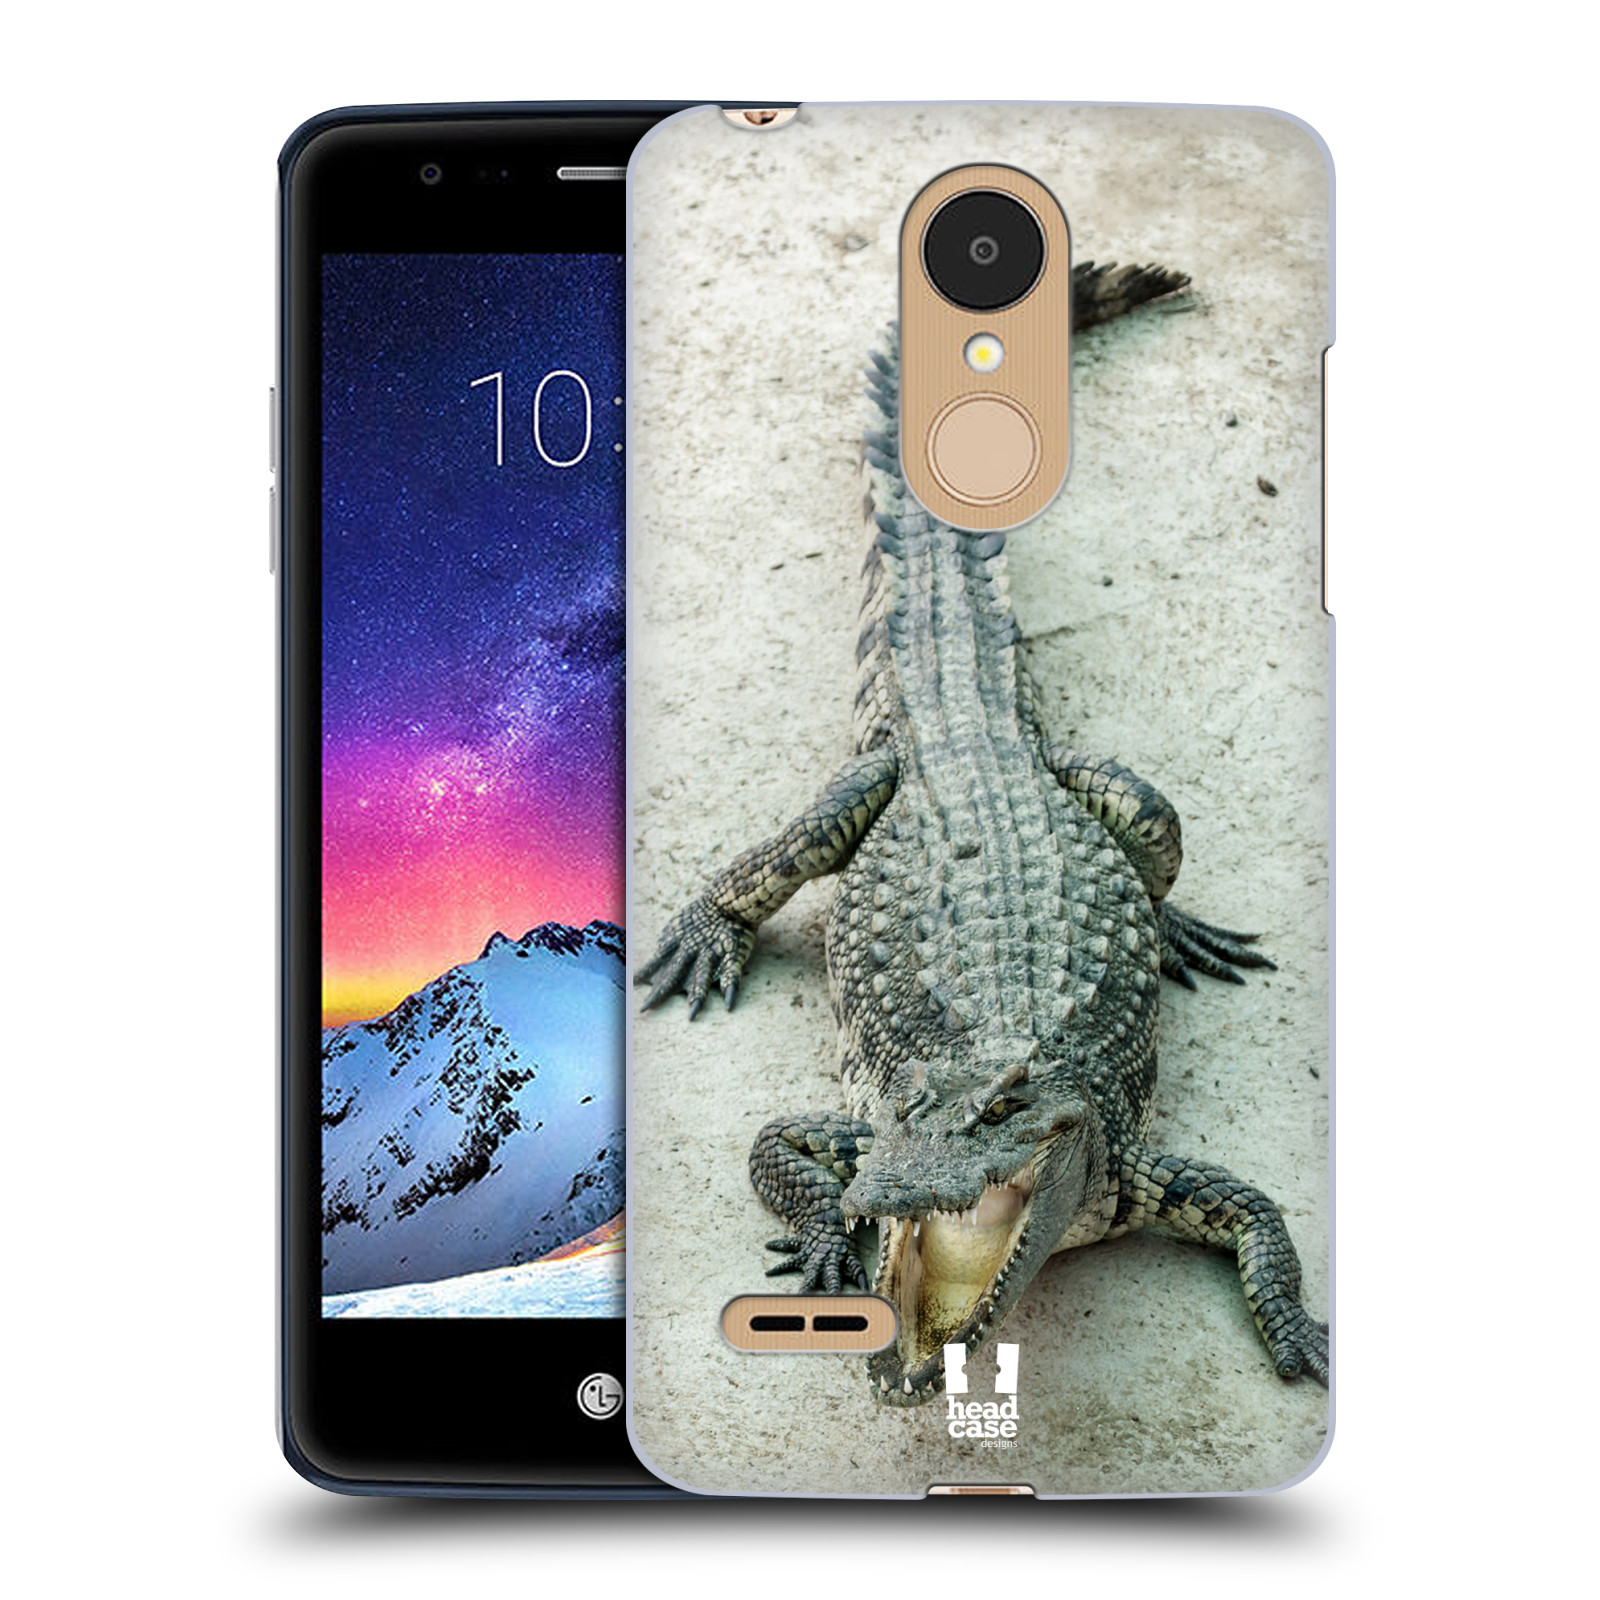 HEAD CASE plastový obal na mobil LG K9 / K8 2018 vzor Divočina, Divoký život a zvířata foto KROKODÝL, KAJMAN